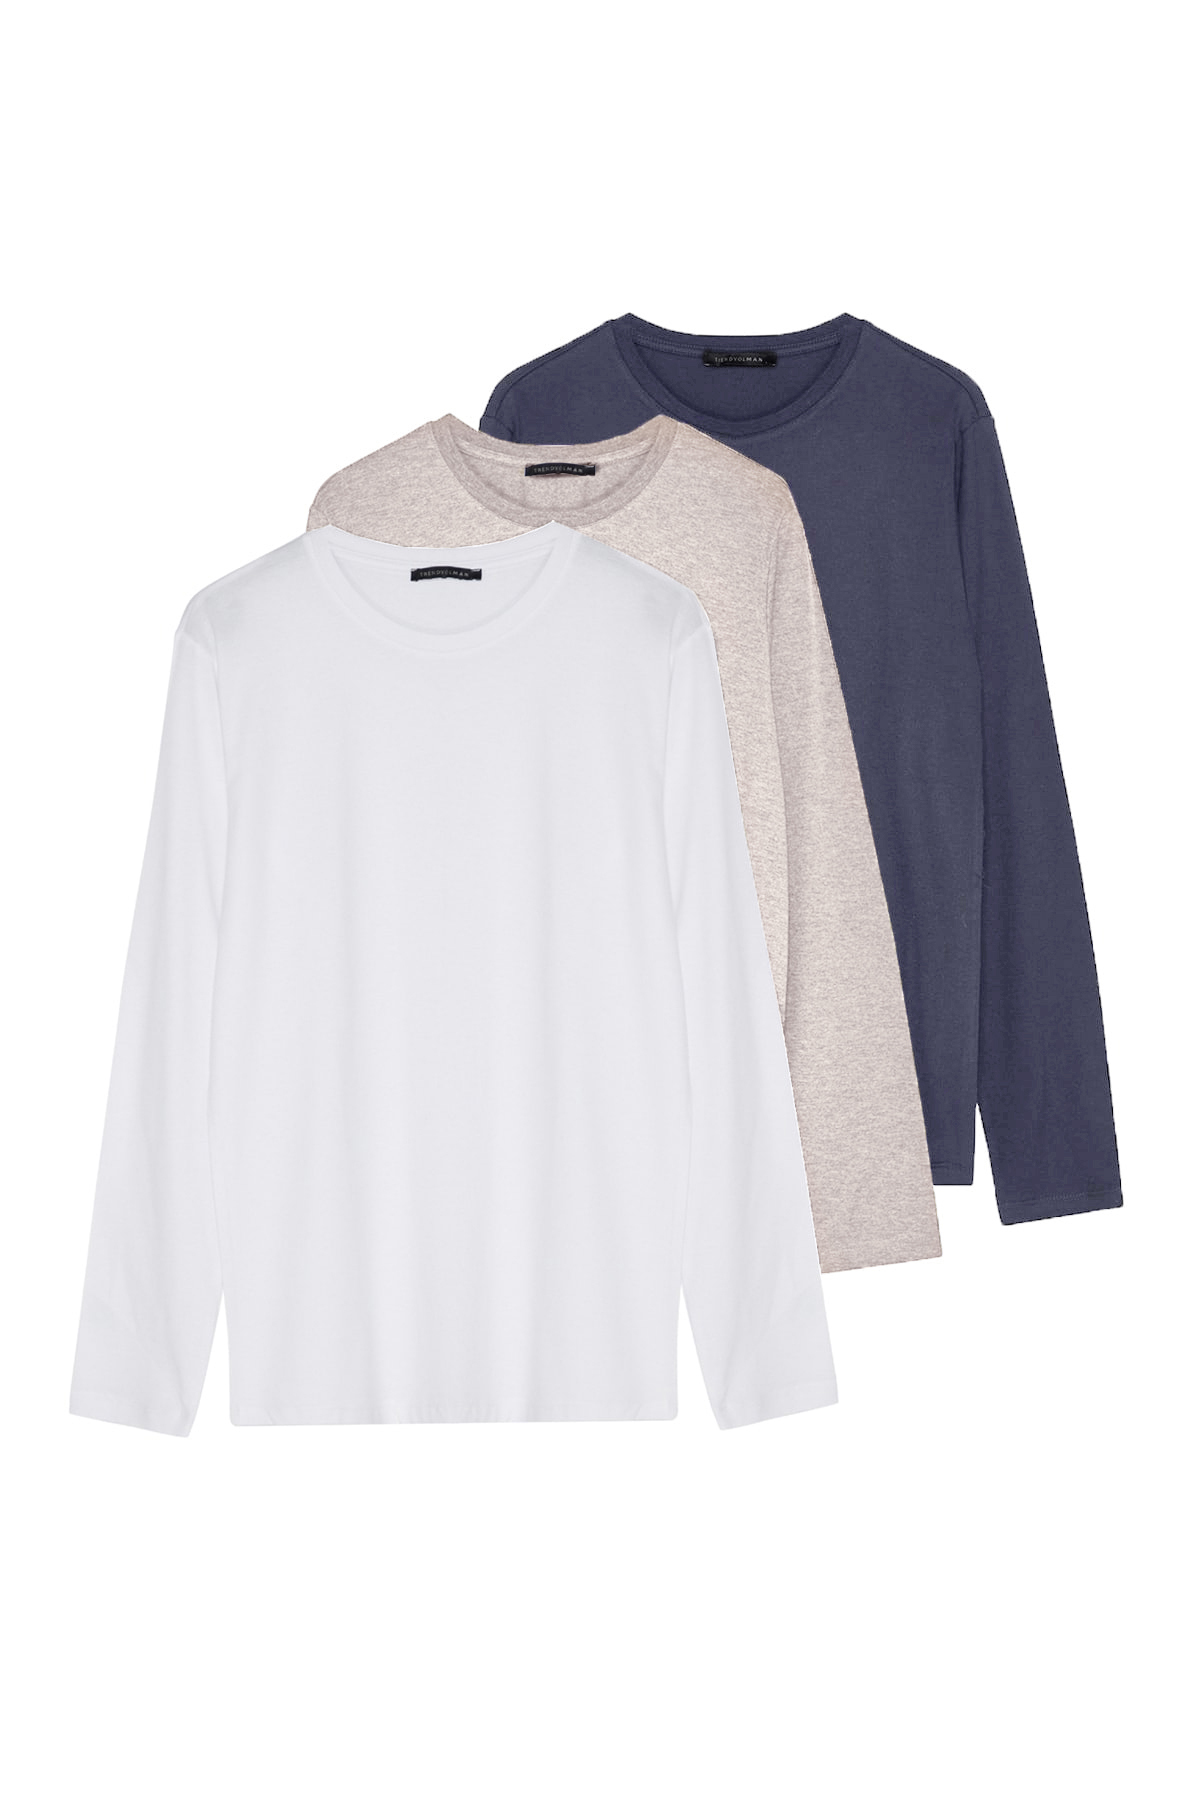 Levně Trendyol 3-Souprava Tmavě šedá-béžová-bílá Slim / Slim Fit 100% bavlna Dlouhý rukáv Základní tričko